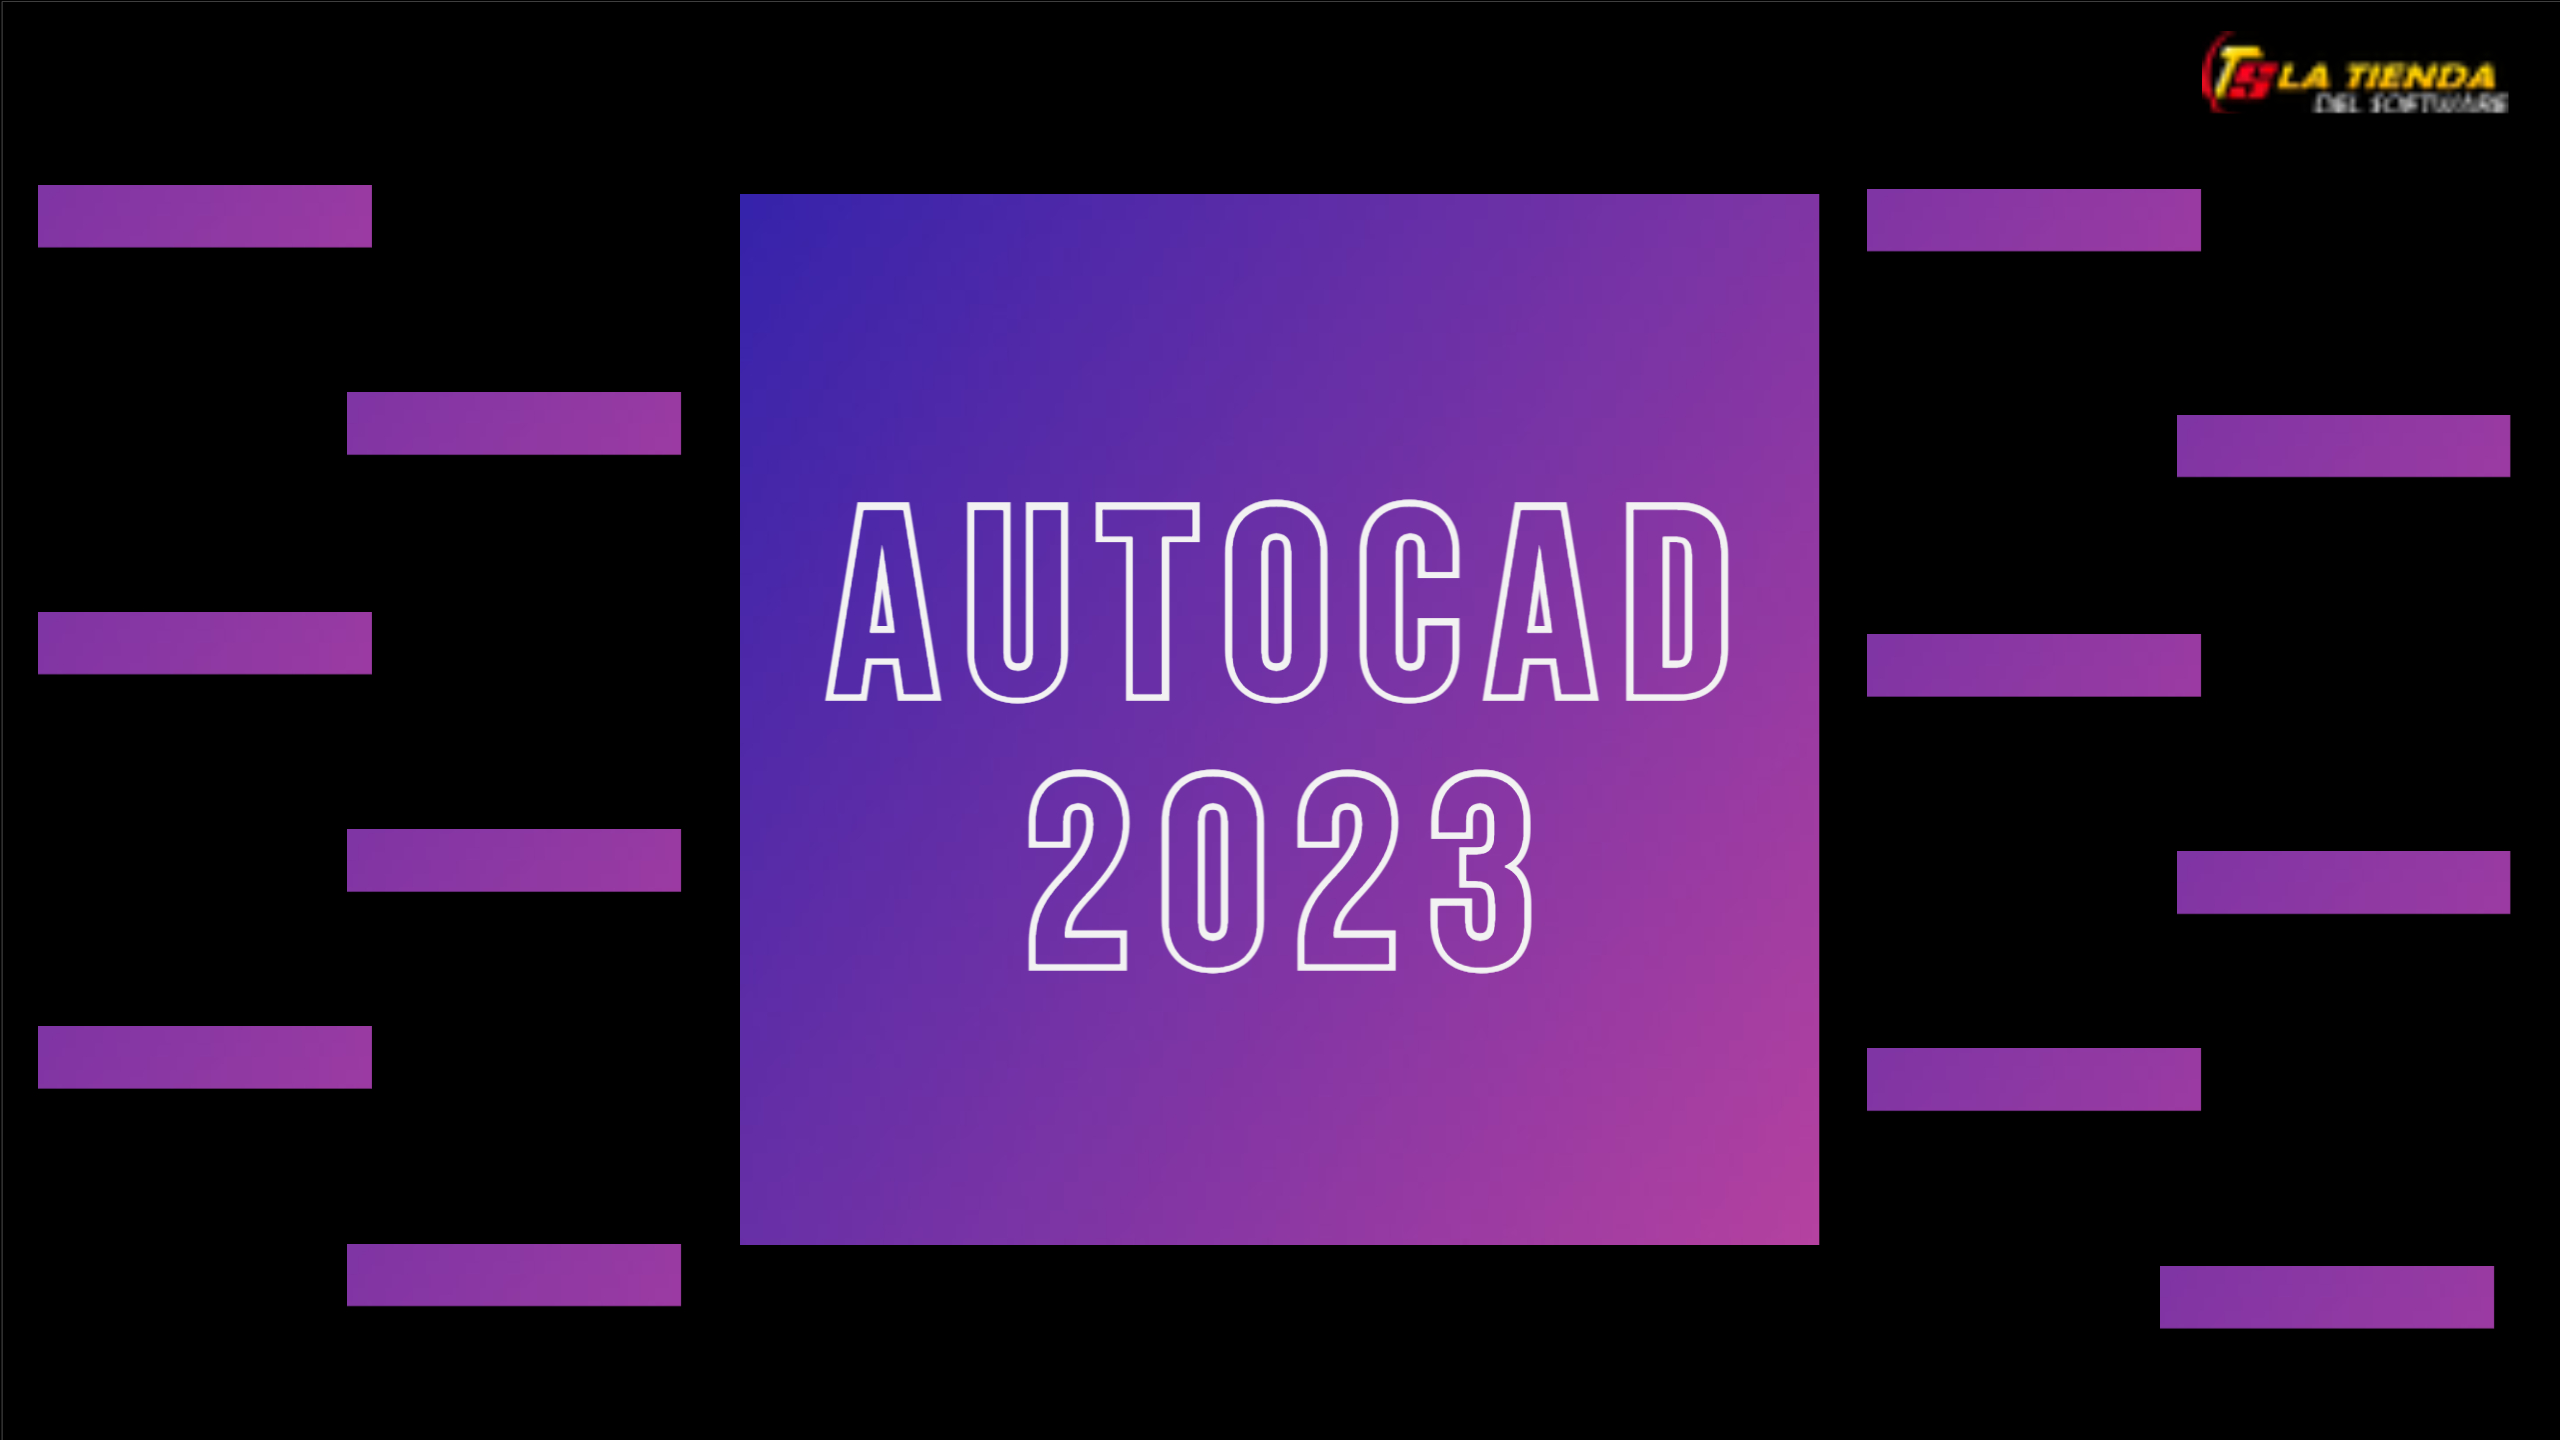 AutoCAD 2023 como activar autocad 2023 ventajas y más